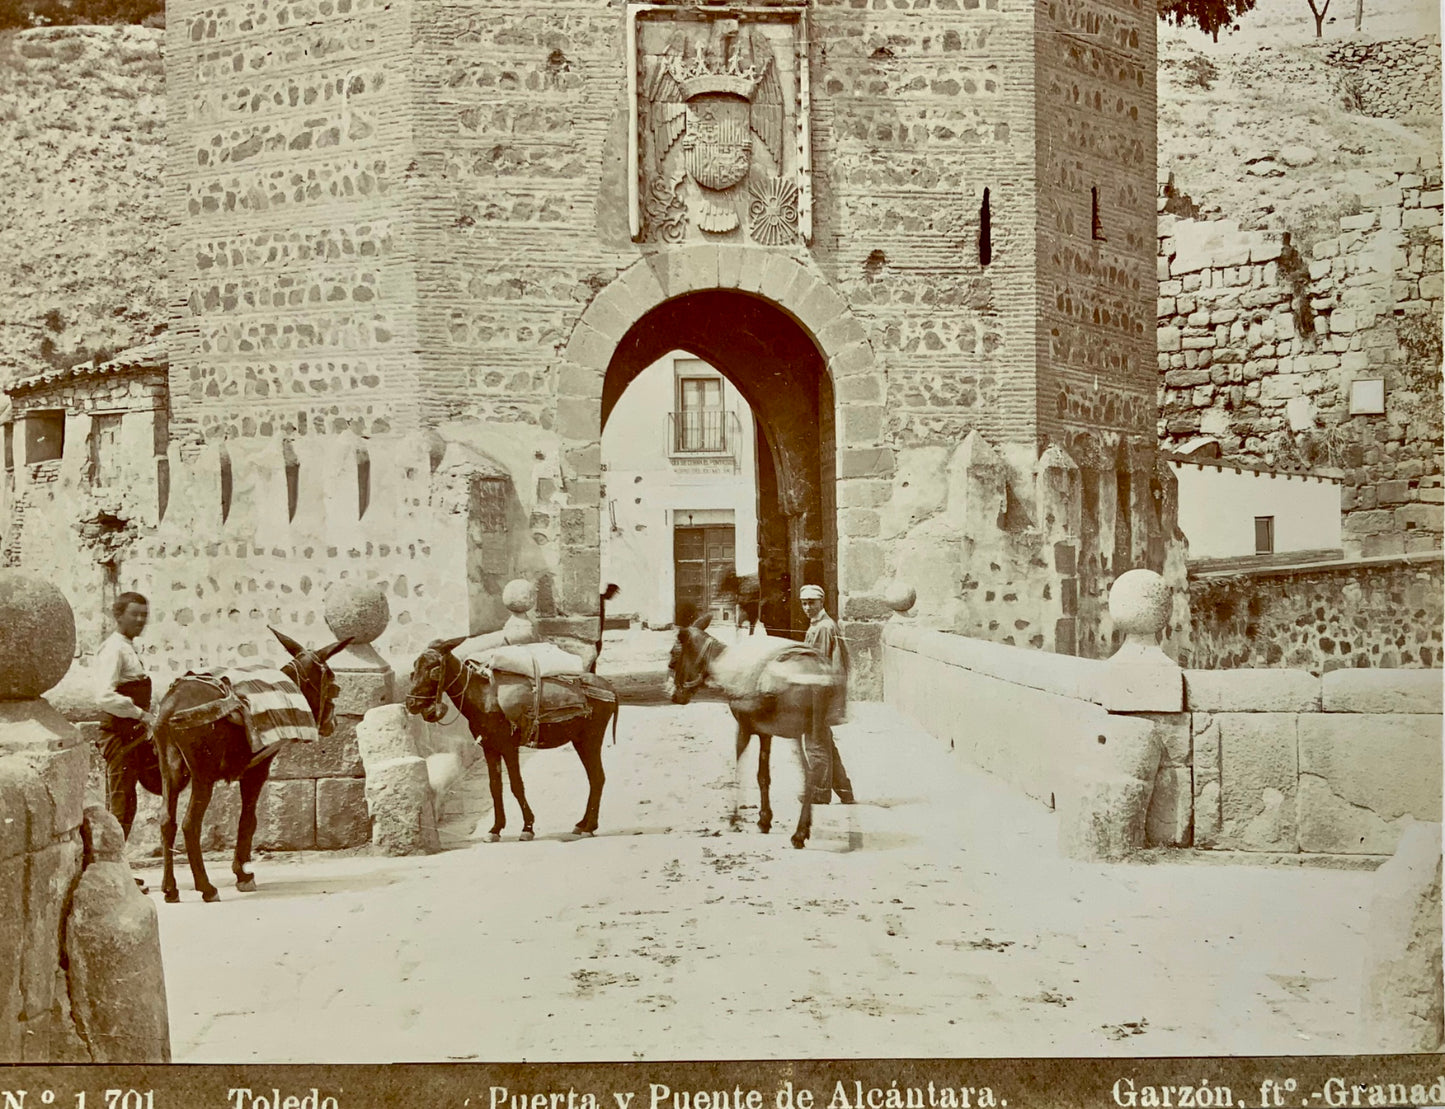 1880 Rafael Garzón, Spagna, Toledo, Puerta Alcantara, stampa all'albumina 